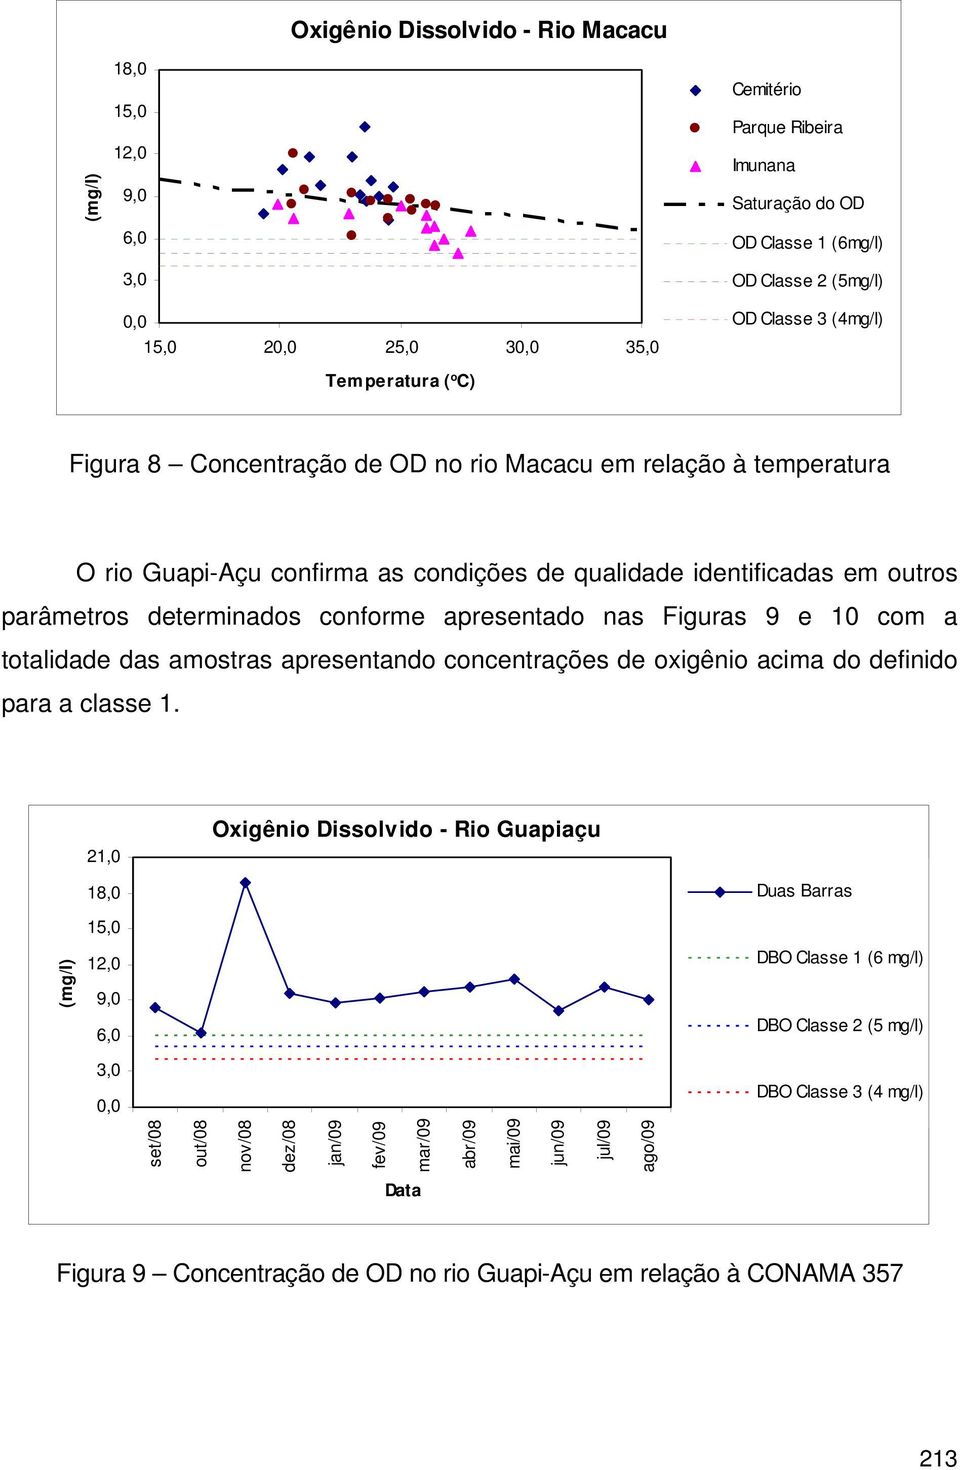 conforme apresentado nas Figuras 9 e 10 com a totalidade das amostras apresentando concentrações de oxigênio acima do definido para a classe 1.